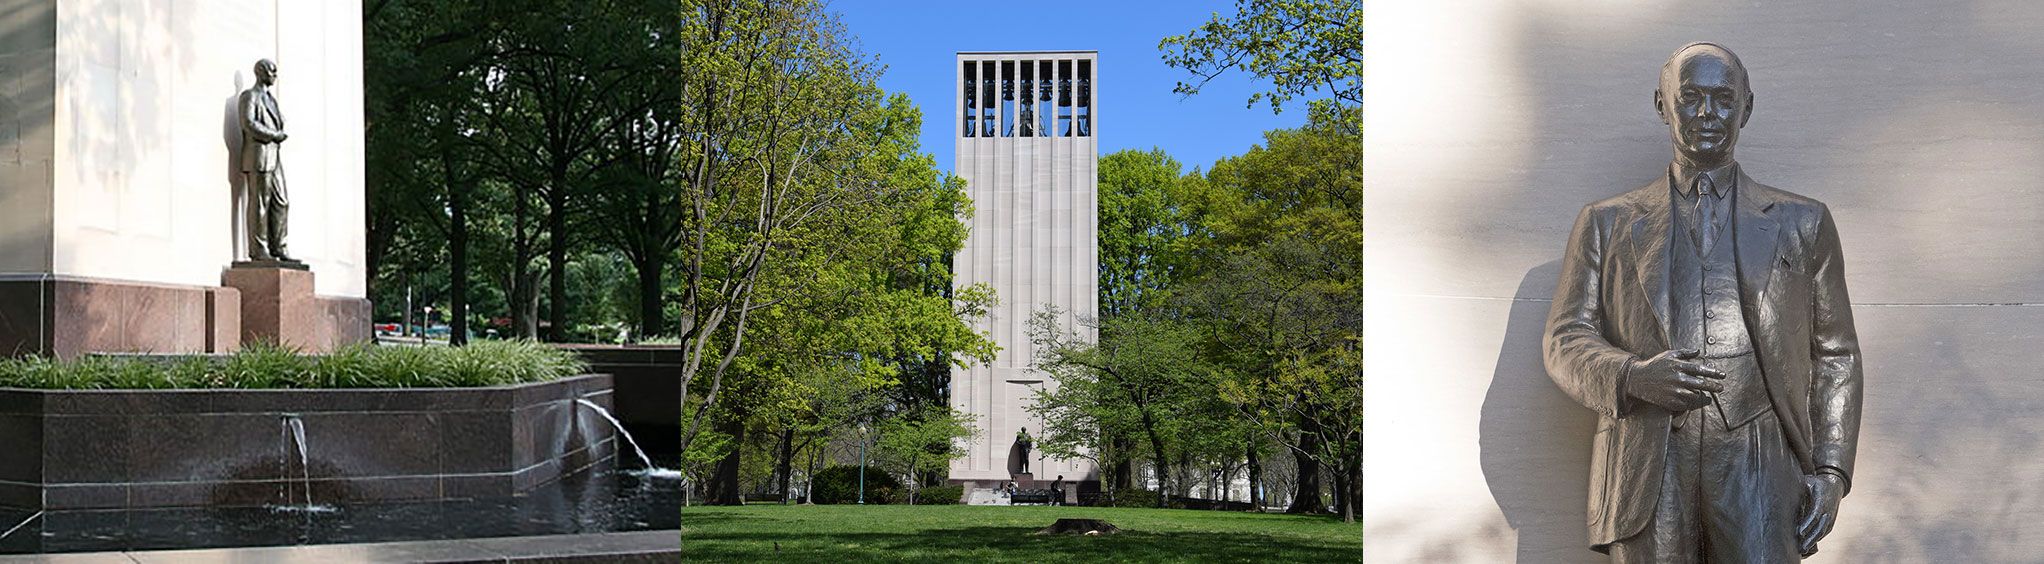 Taft Memorial and Carillon